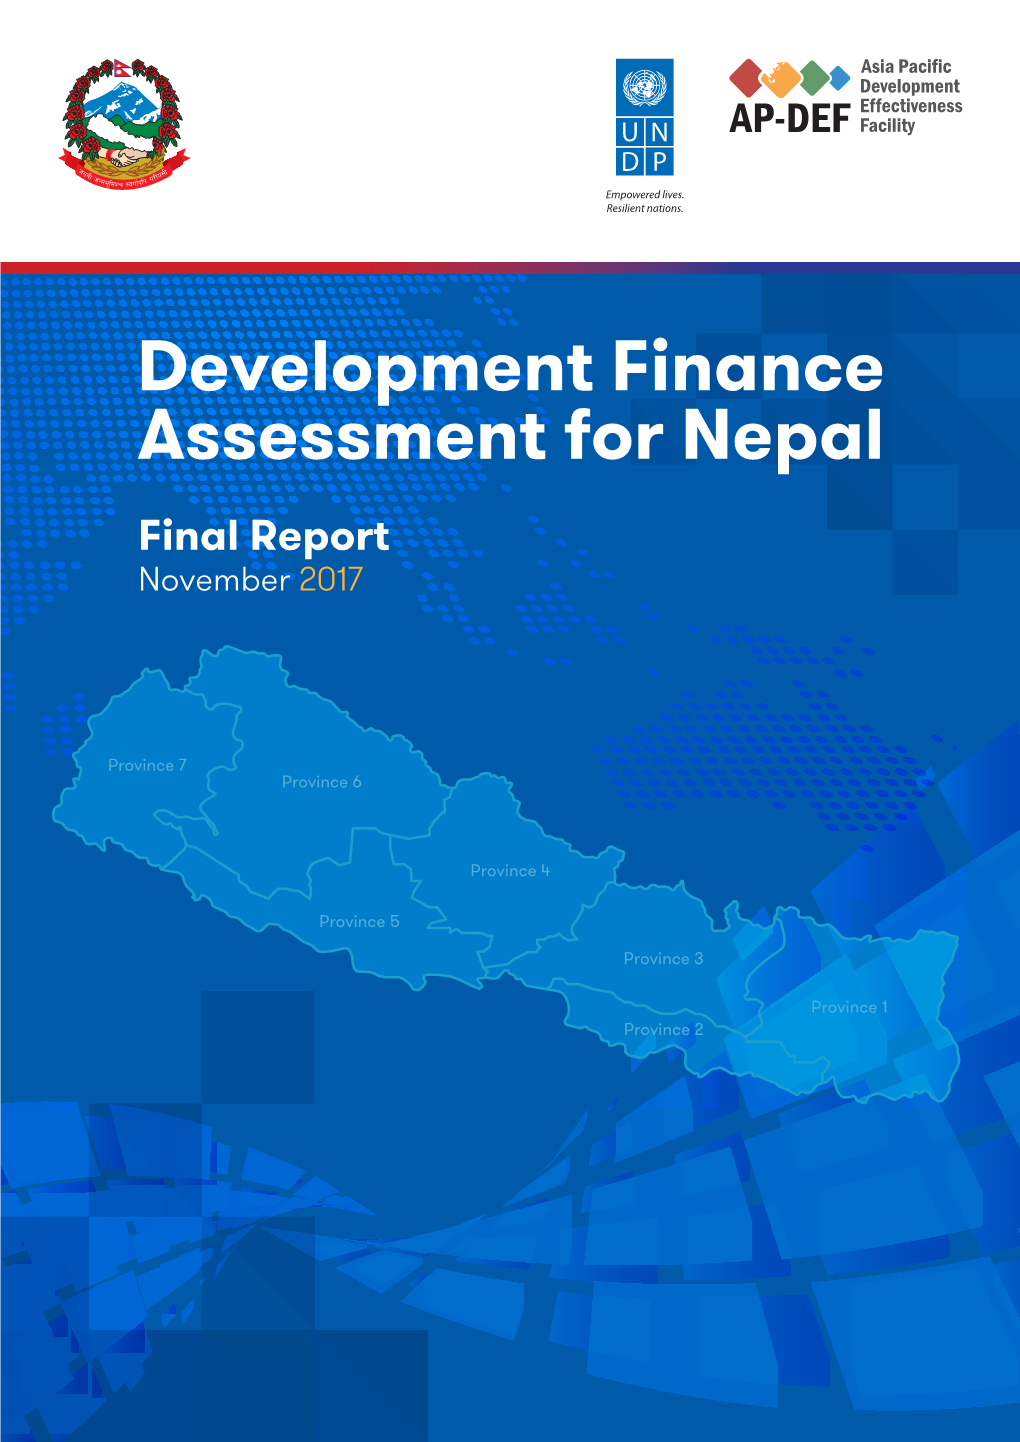 Development Finance Assessment for Nepal Final Report November 2017